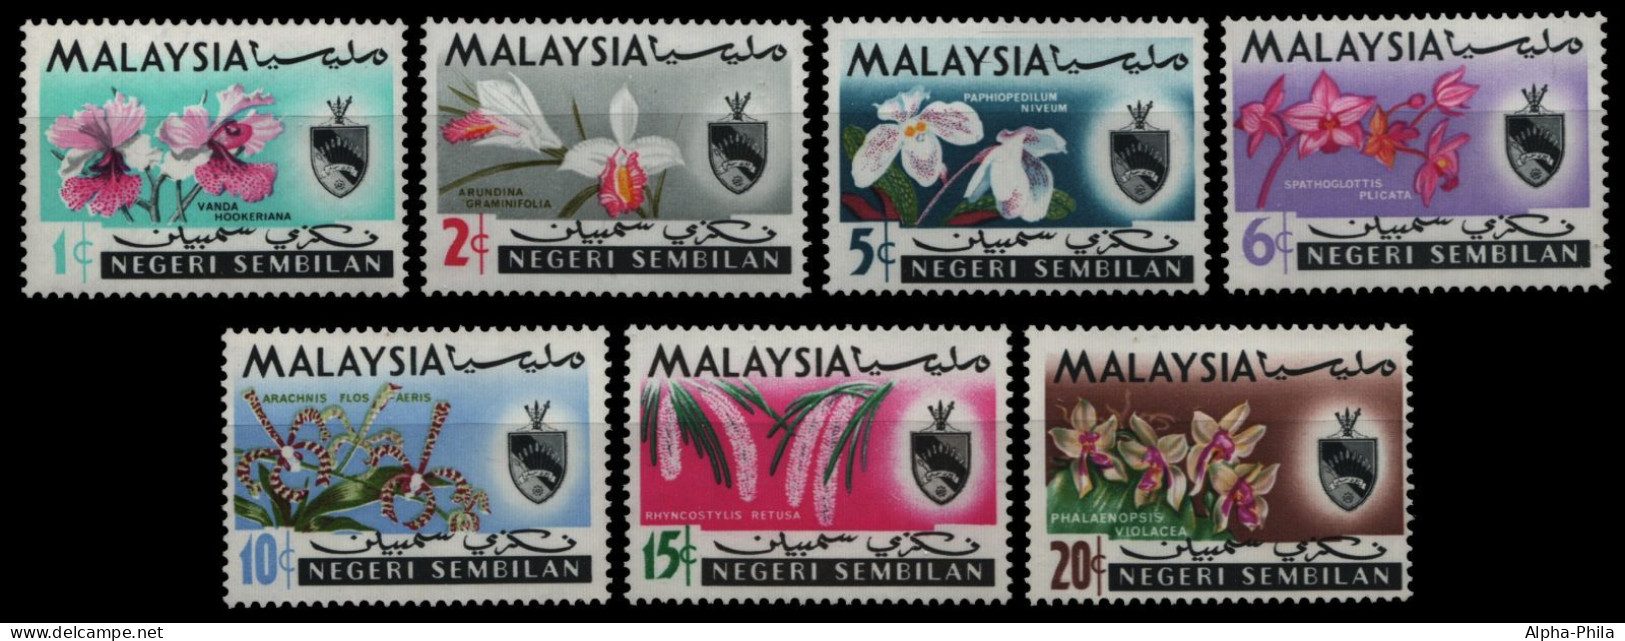 Malaya - Negri Sembilan 1965 - Mi-Nr. 79-85 ** - MNH - Orchideen / Orchids - Negri Sembilan